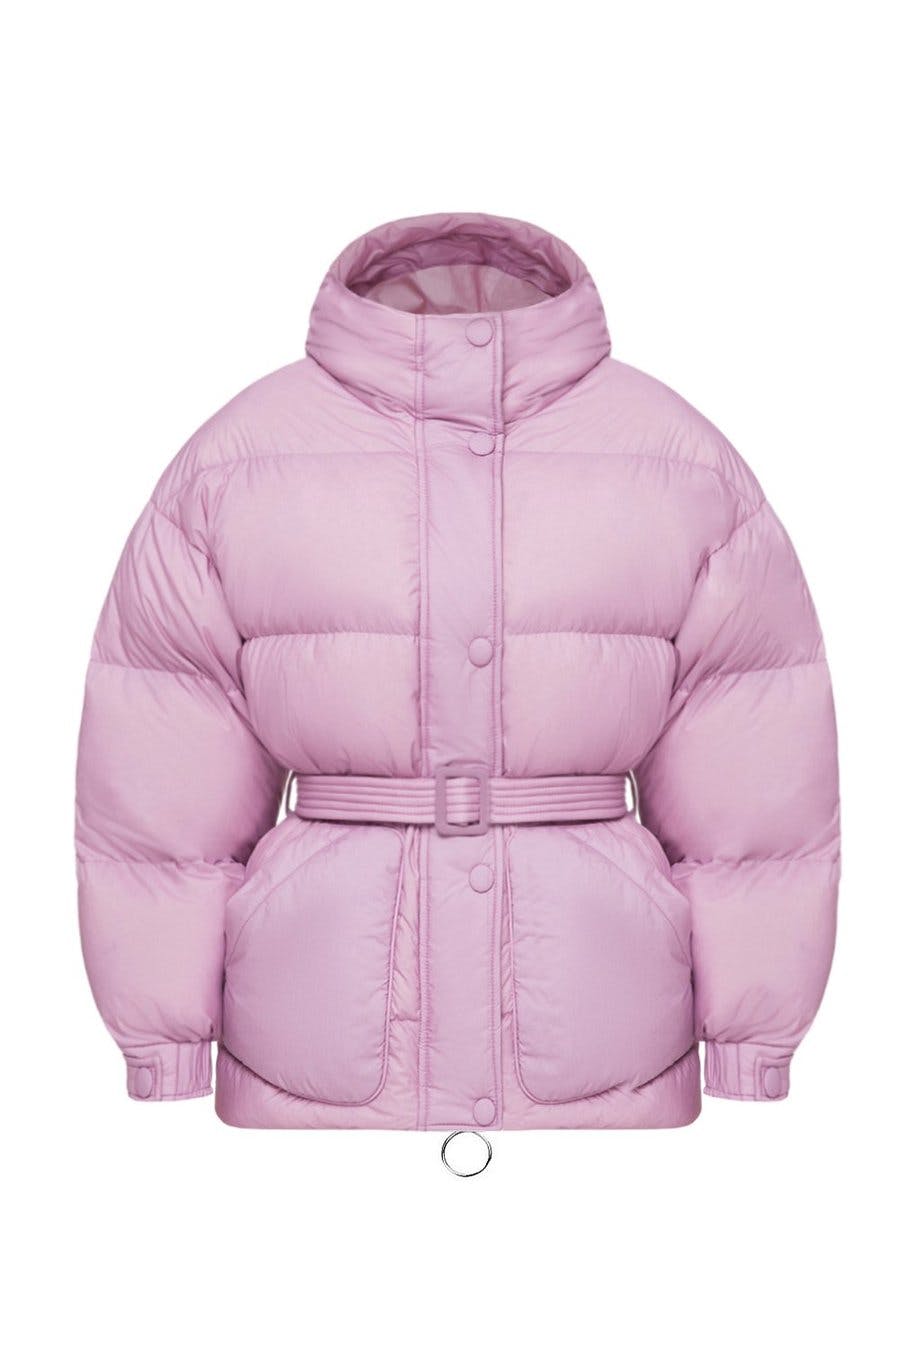 Best puffer jackets coats to shop online